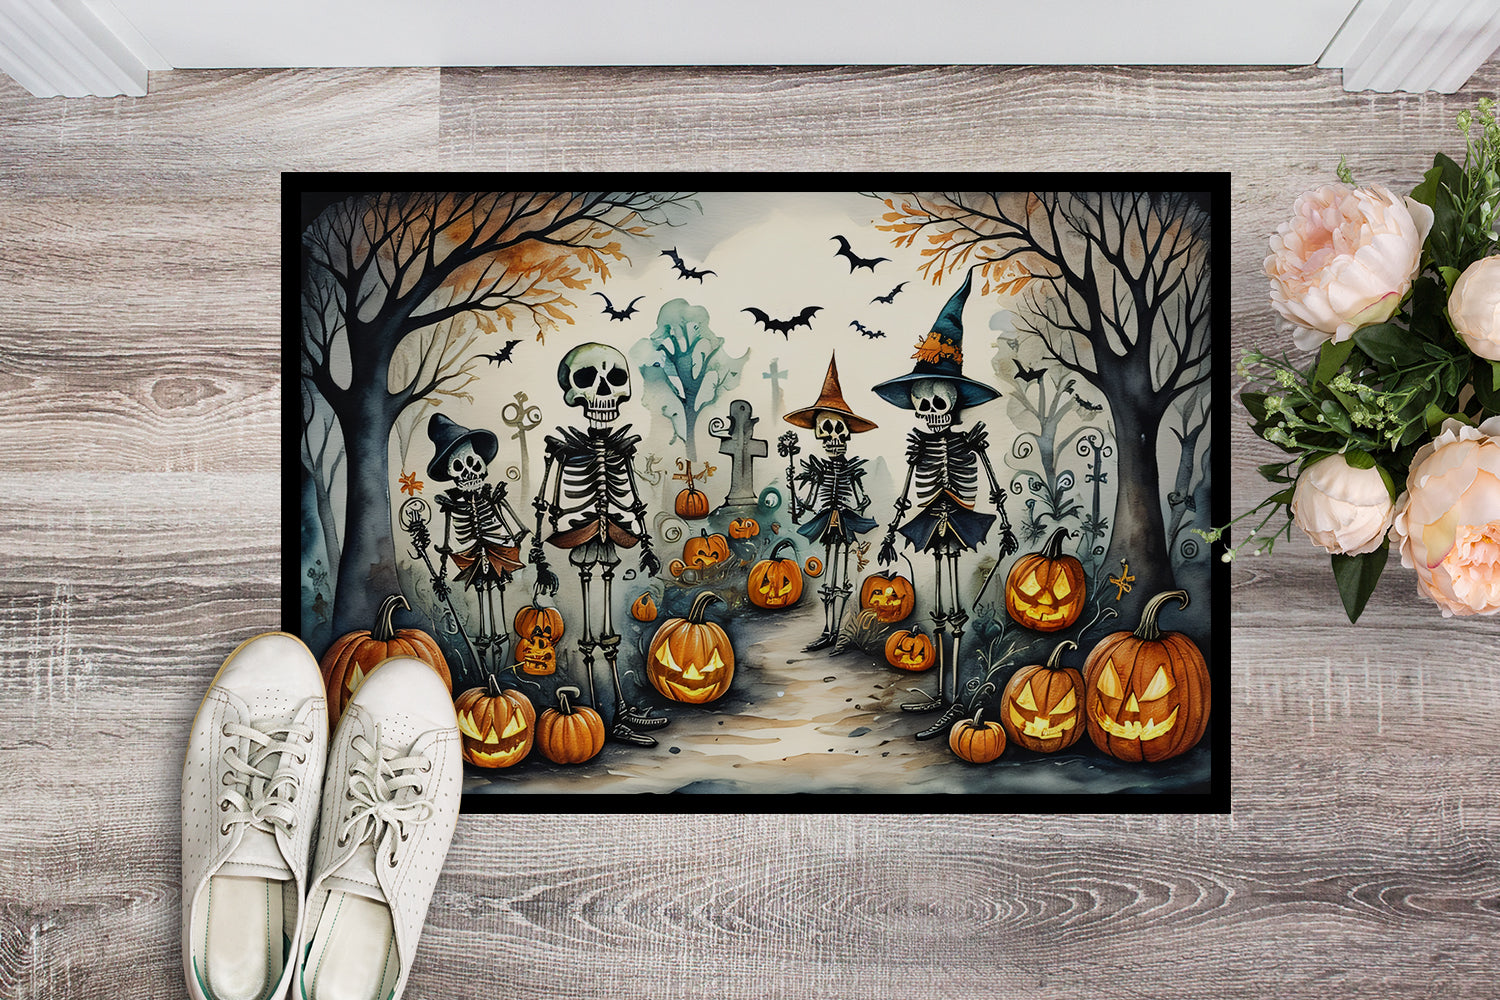 Buy this Calacas Skeletons Spooky Halloween Doormat 18x27